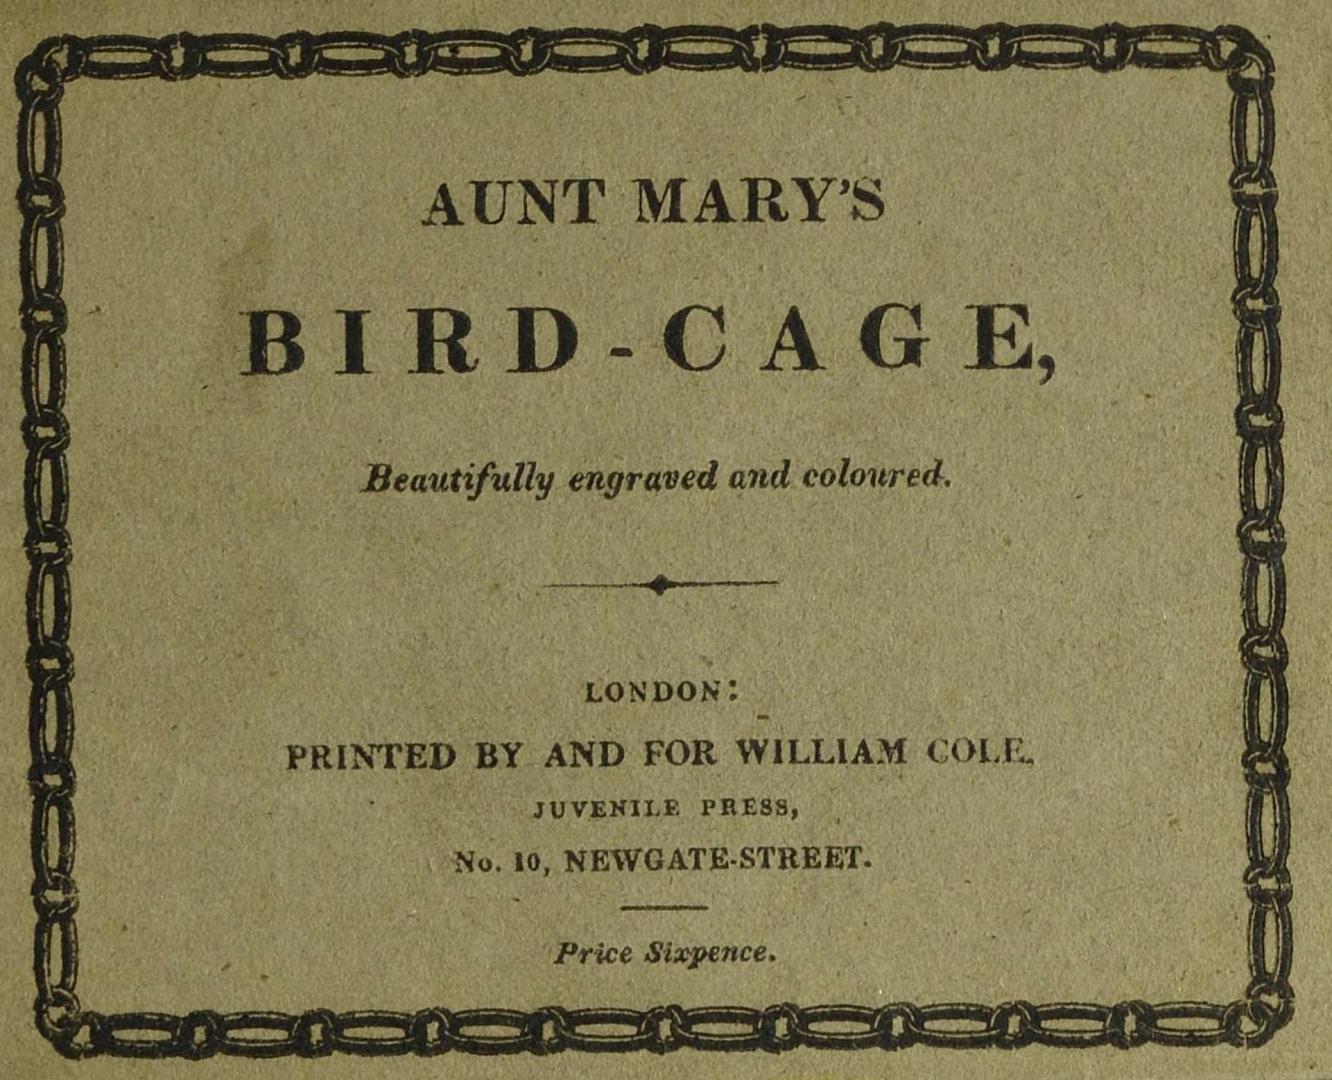 Aunt Mary's birdcage